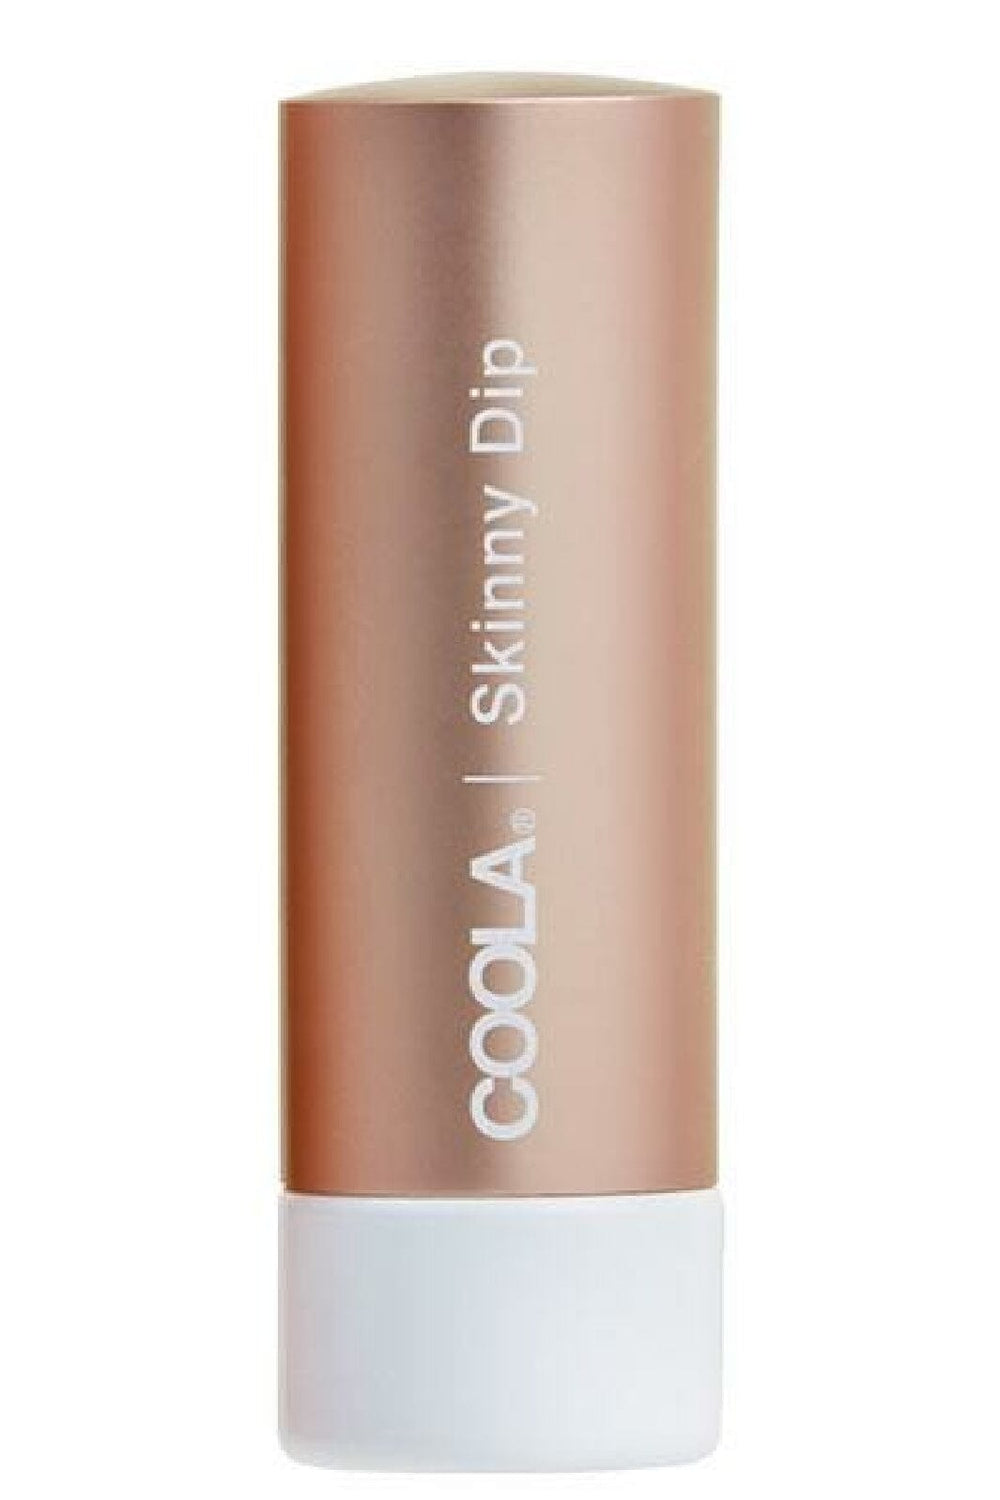 Coola - Mineral Liplux Tinted Lip Balm SPF 30 - Skinny Dip (Sheer Tint) Læbepleje 